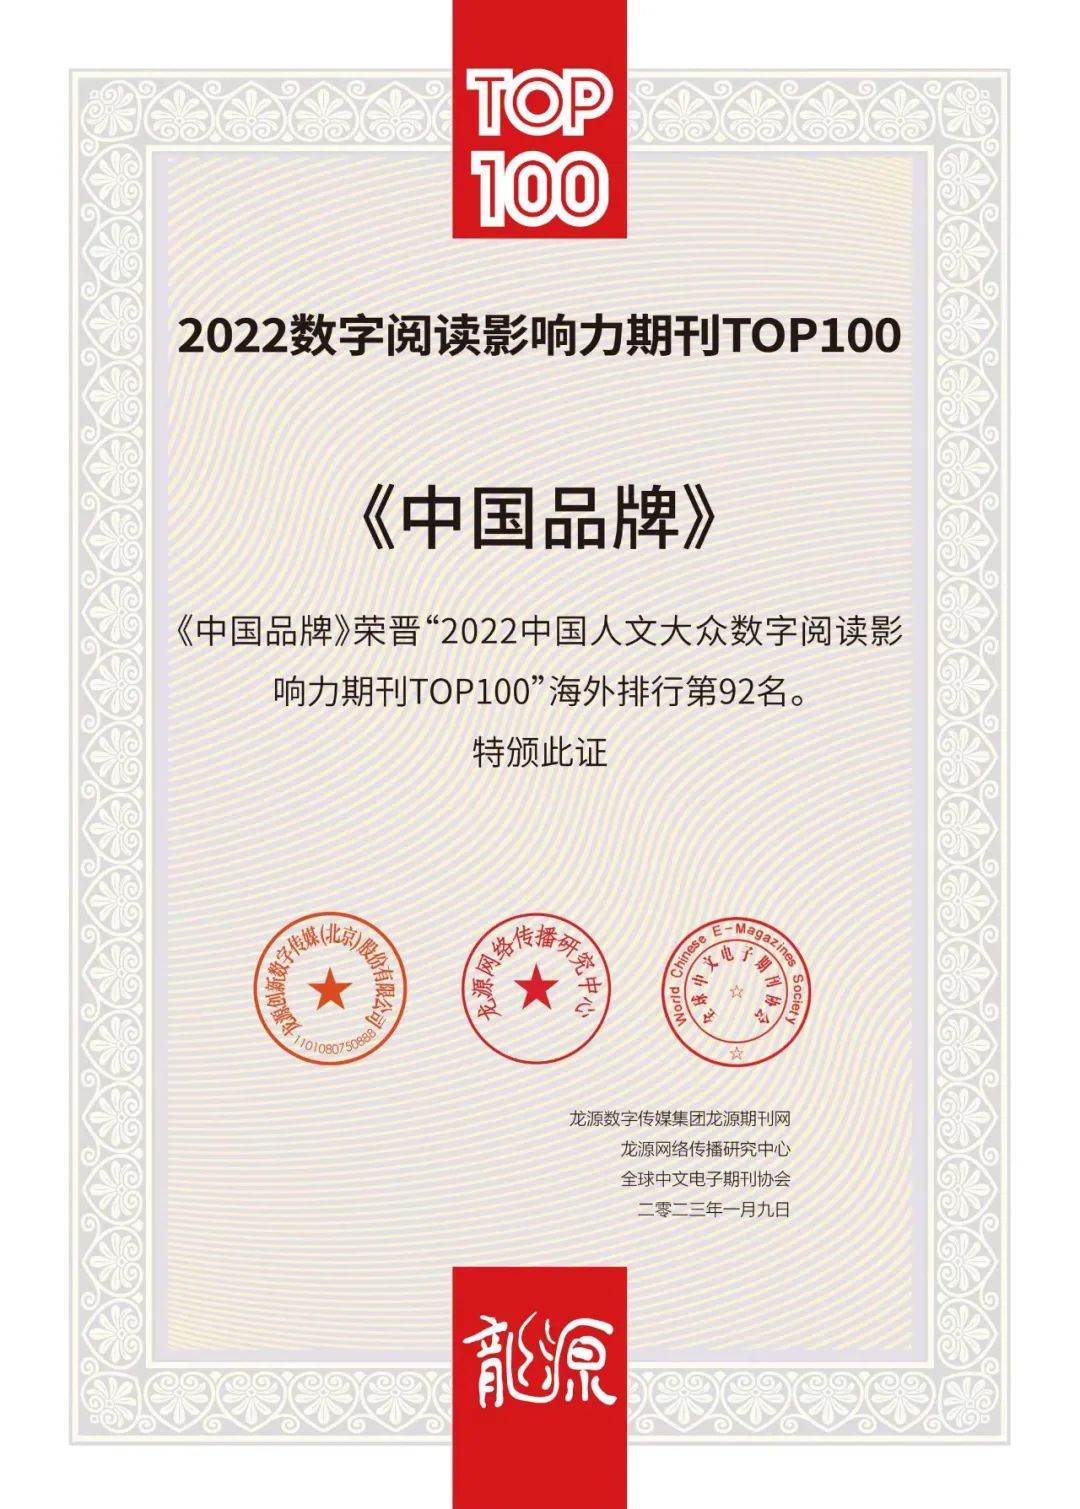 《中国品牌》杂志入选2022数字阅读影响力期刊TOP100榜单